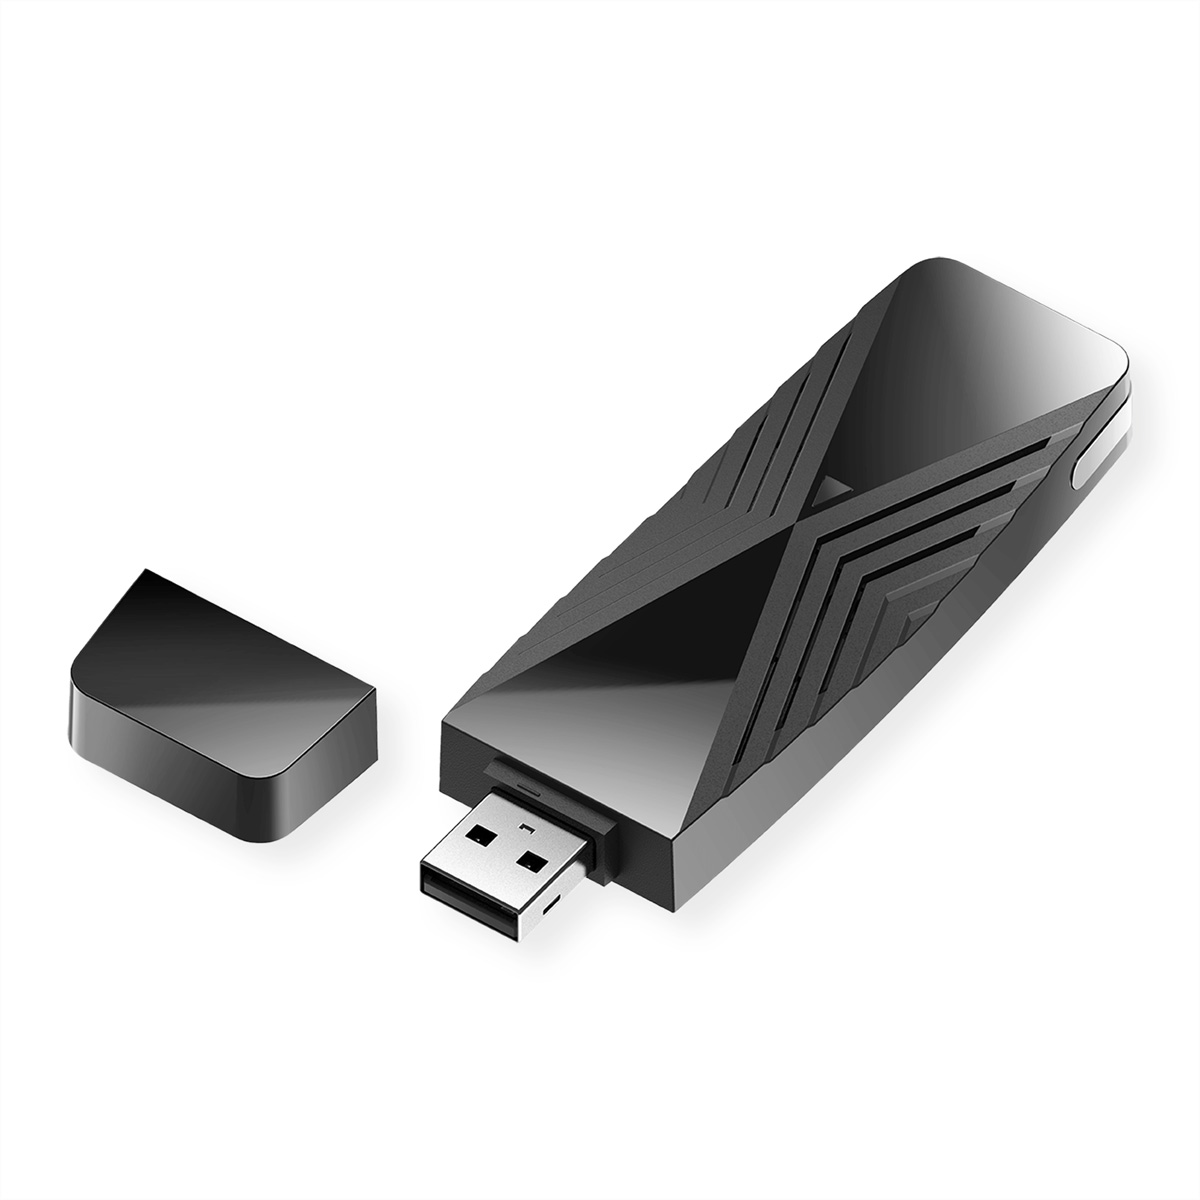 D-LINK DWA-X1850 AX1800 Wi-Fi 6 USB Stick Adapter USB WLAN